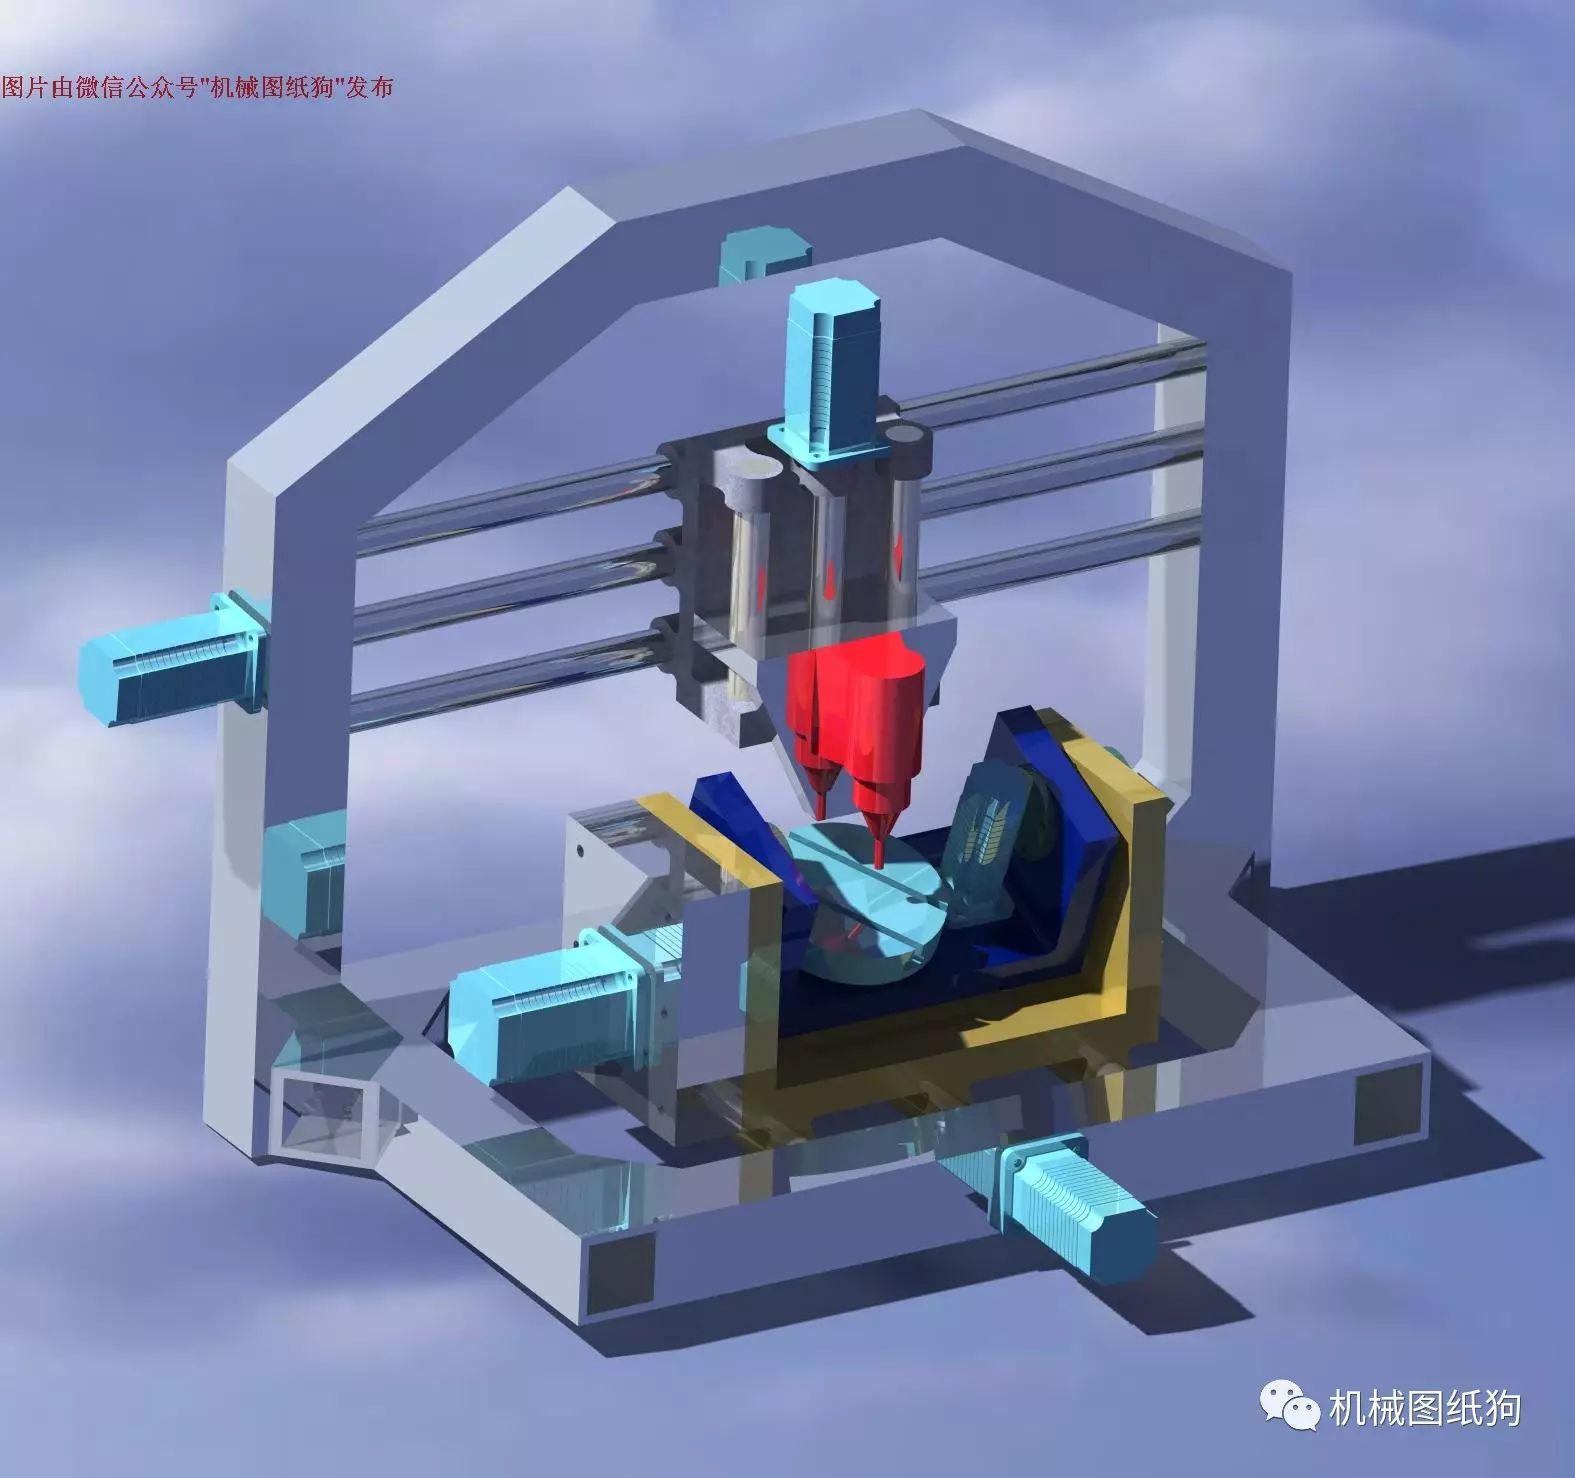 【工程机械】五轴CNC数控机床核心结构示意模型3D图纸 CATIA设计